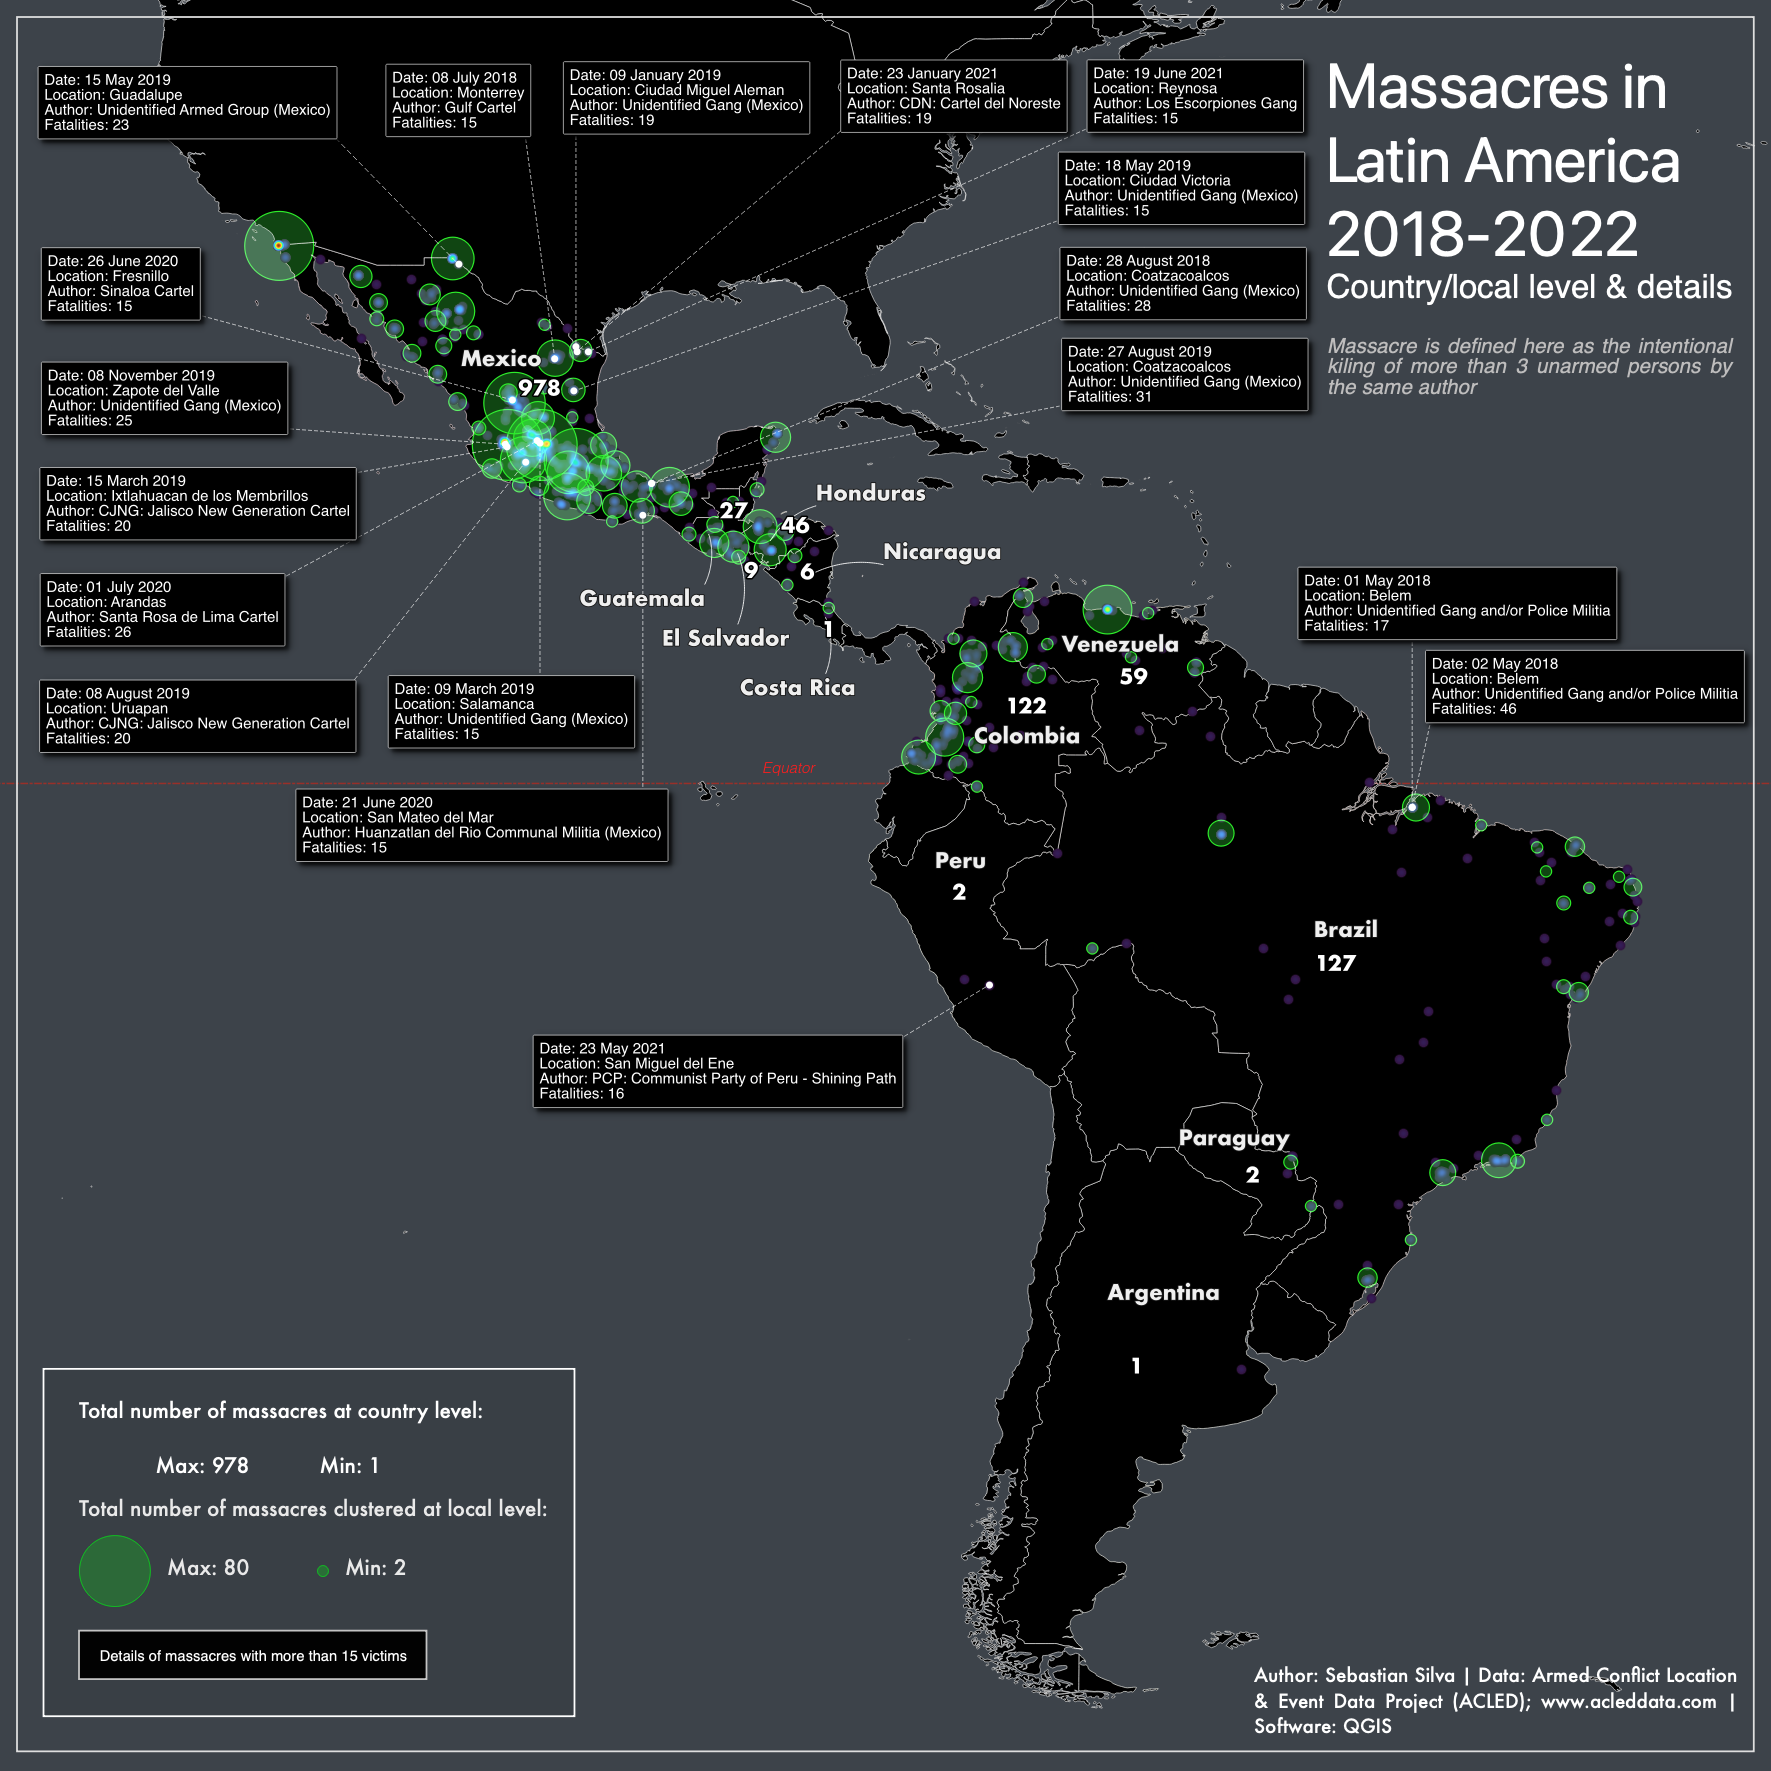 Massacres in Latin America, 2018-2022